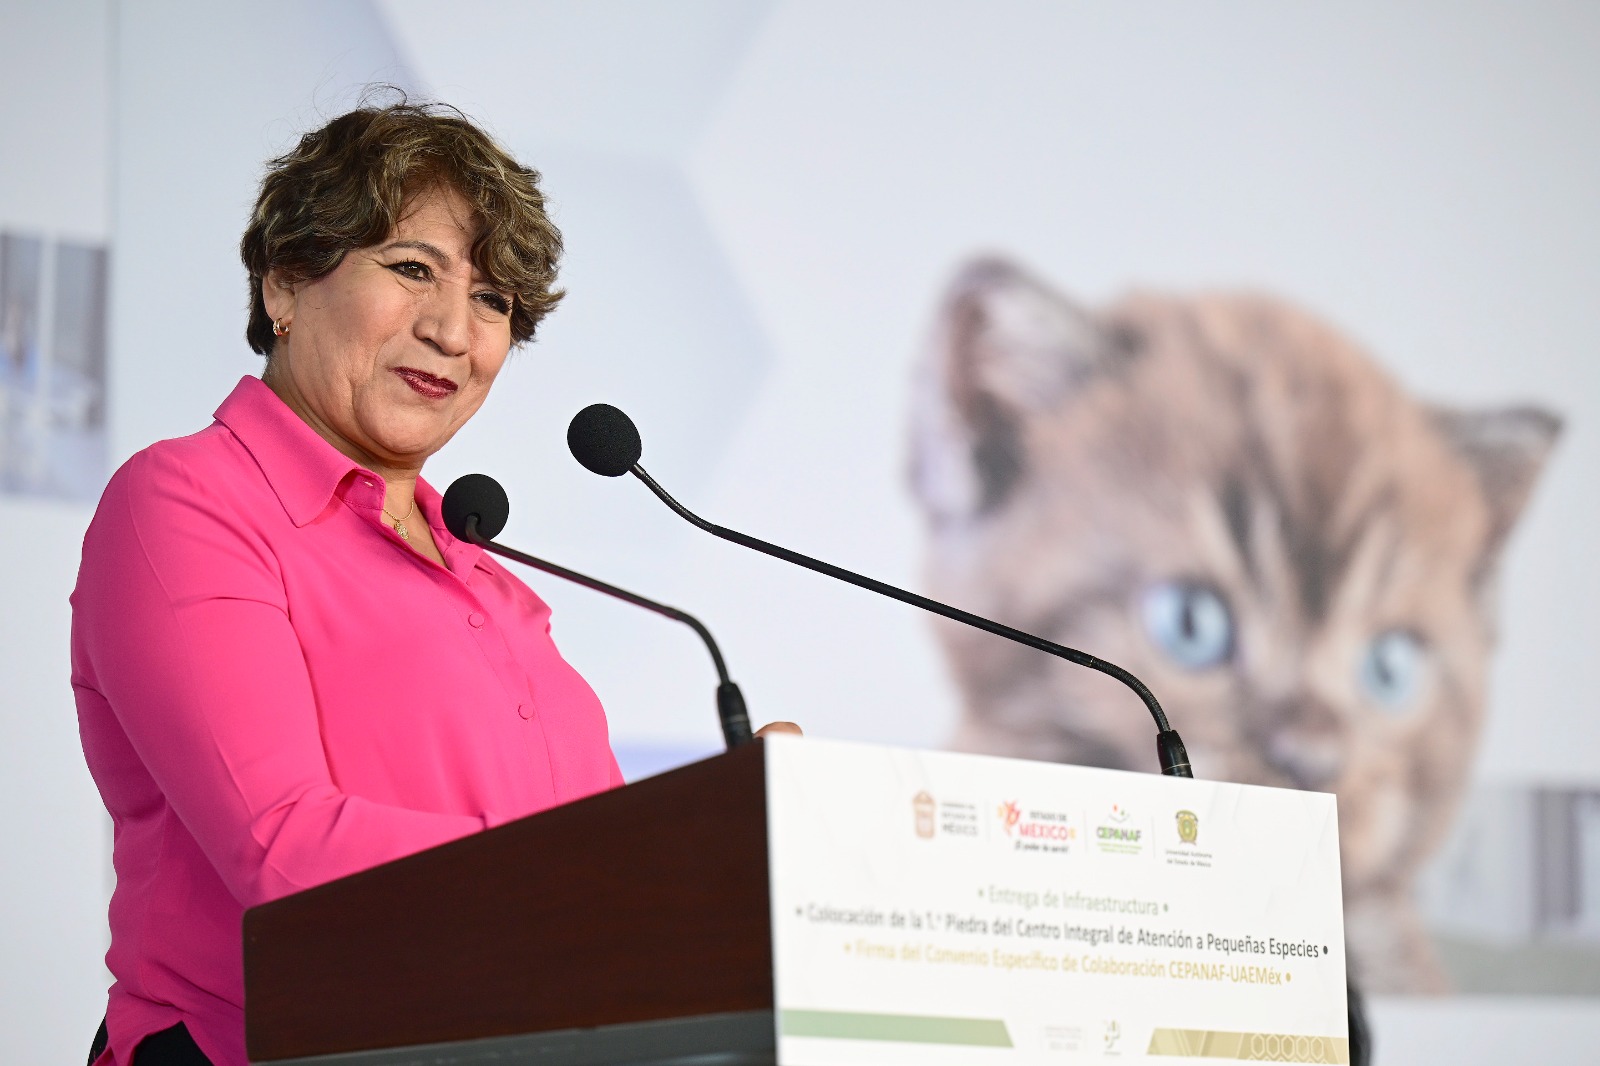 La gobernadora Delfina Gómez Álvarez es pionera en la implementación de acciones para el bienestar animal.